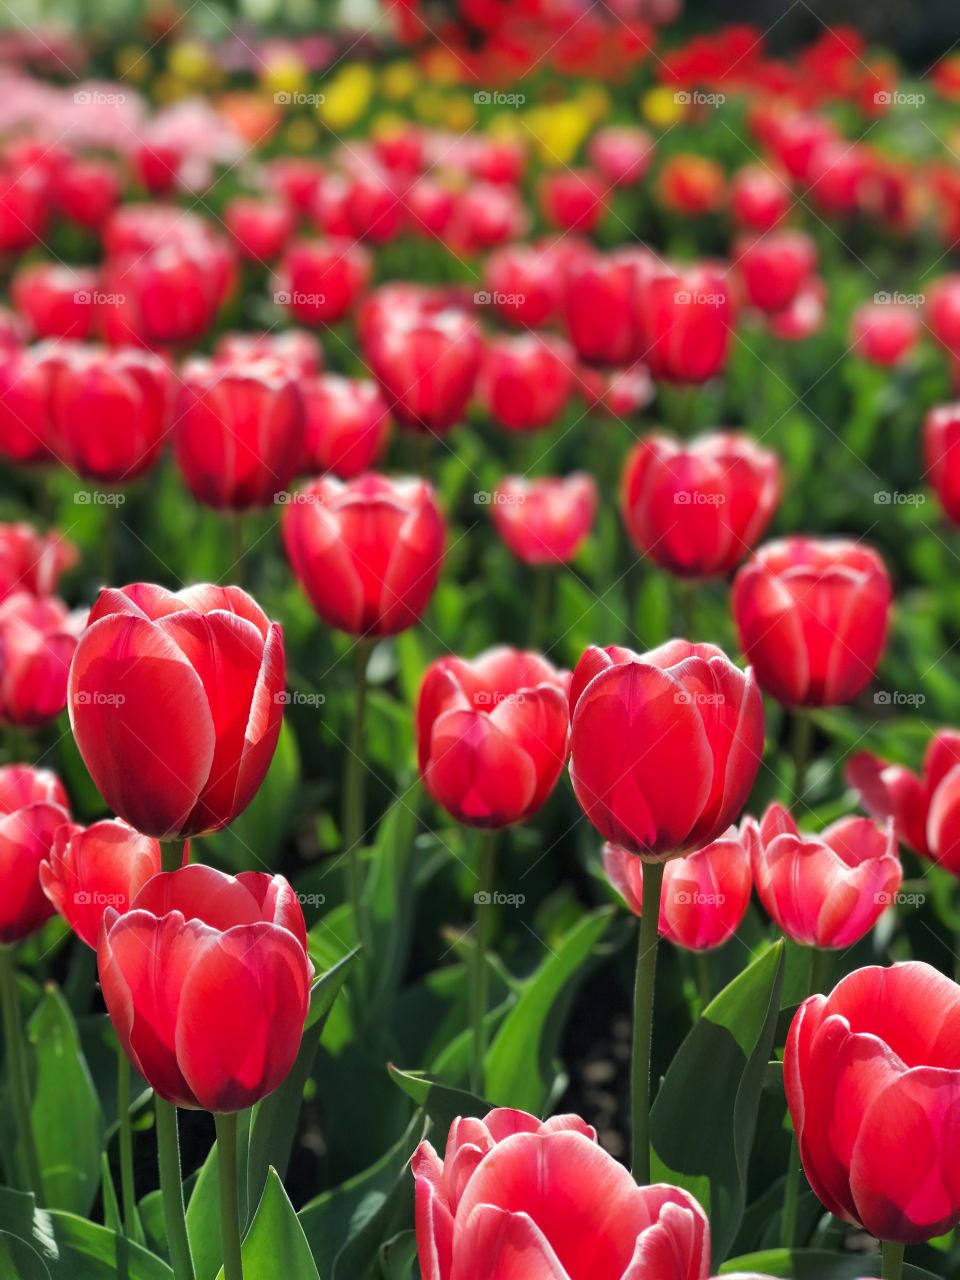 Amazing tulips background. Mother Nature 